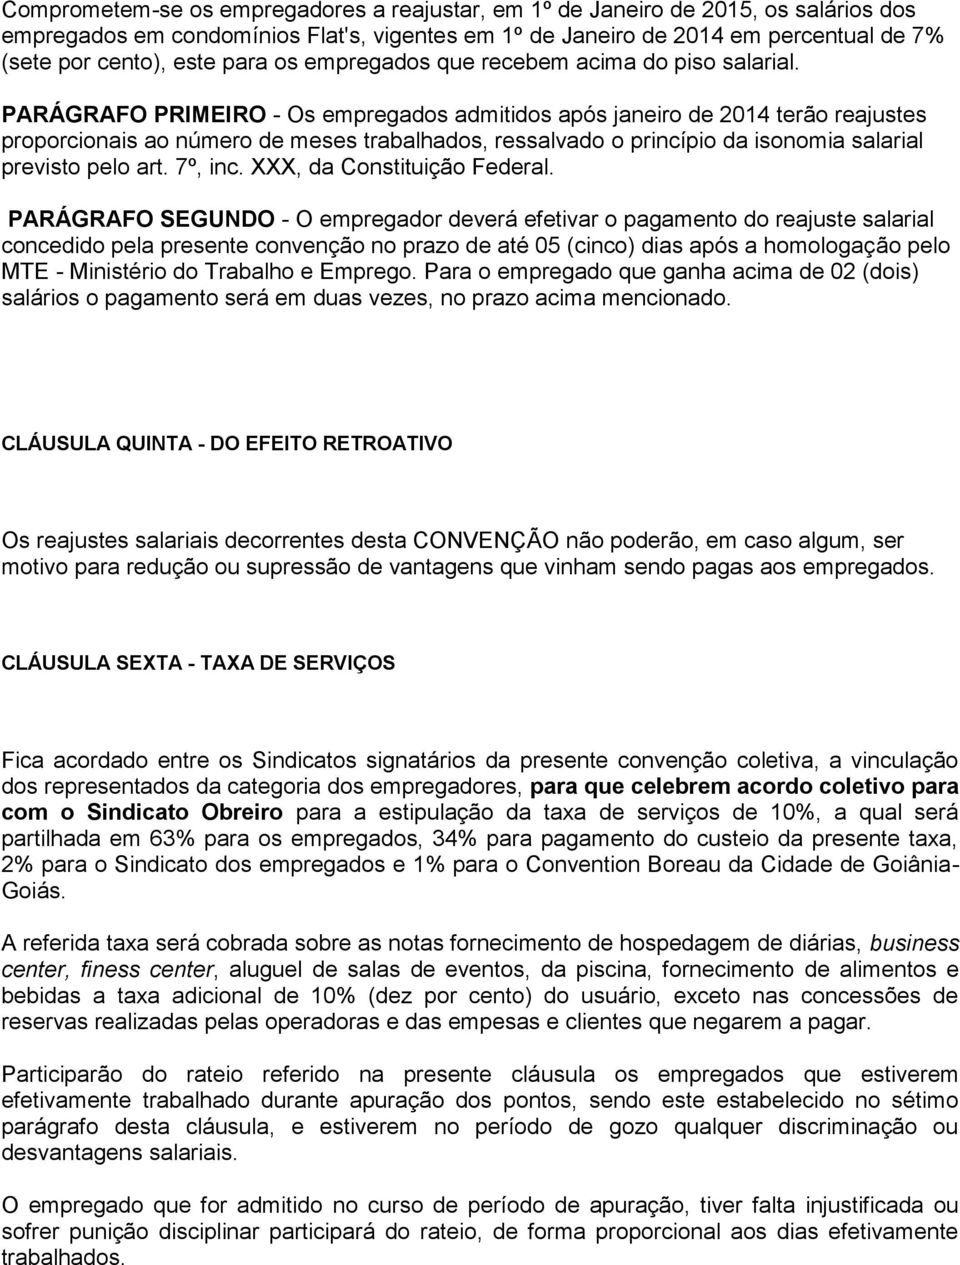 PARÁGRAFO PRIMEIRO - Os empregados admitidos após janeiro de 2014 terão reajustes proporcionais ao número de meses trabalhados, ressalvado o princípio da isonomia salarial previsto pelo art. 7º, inc.